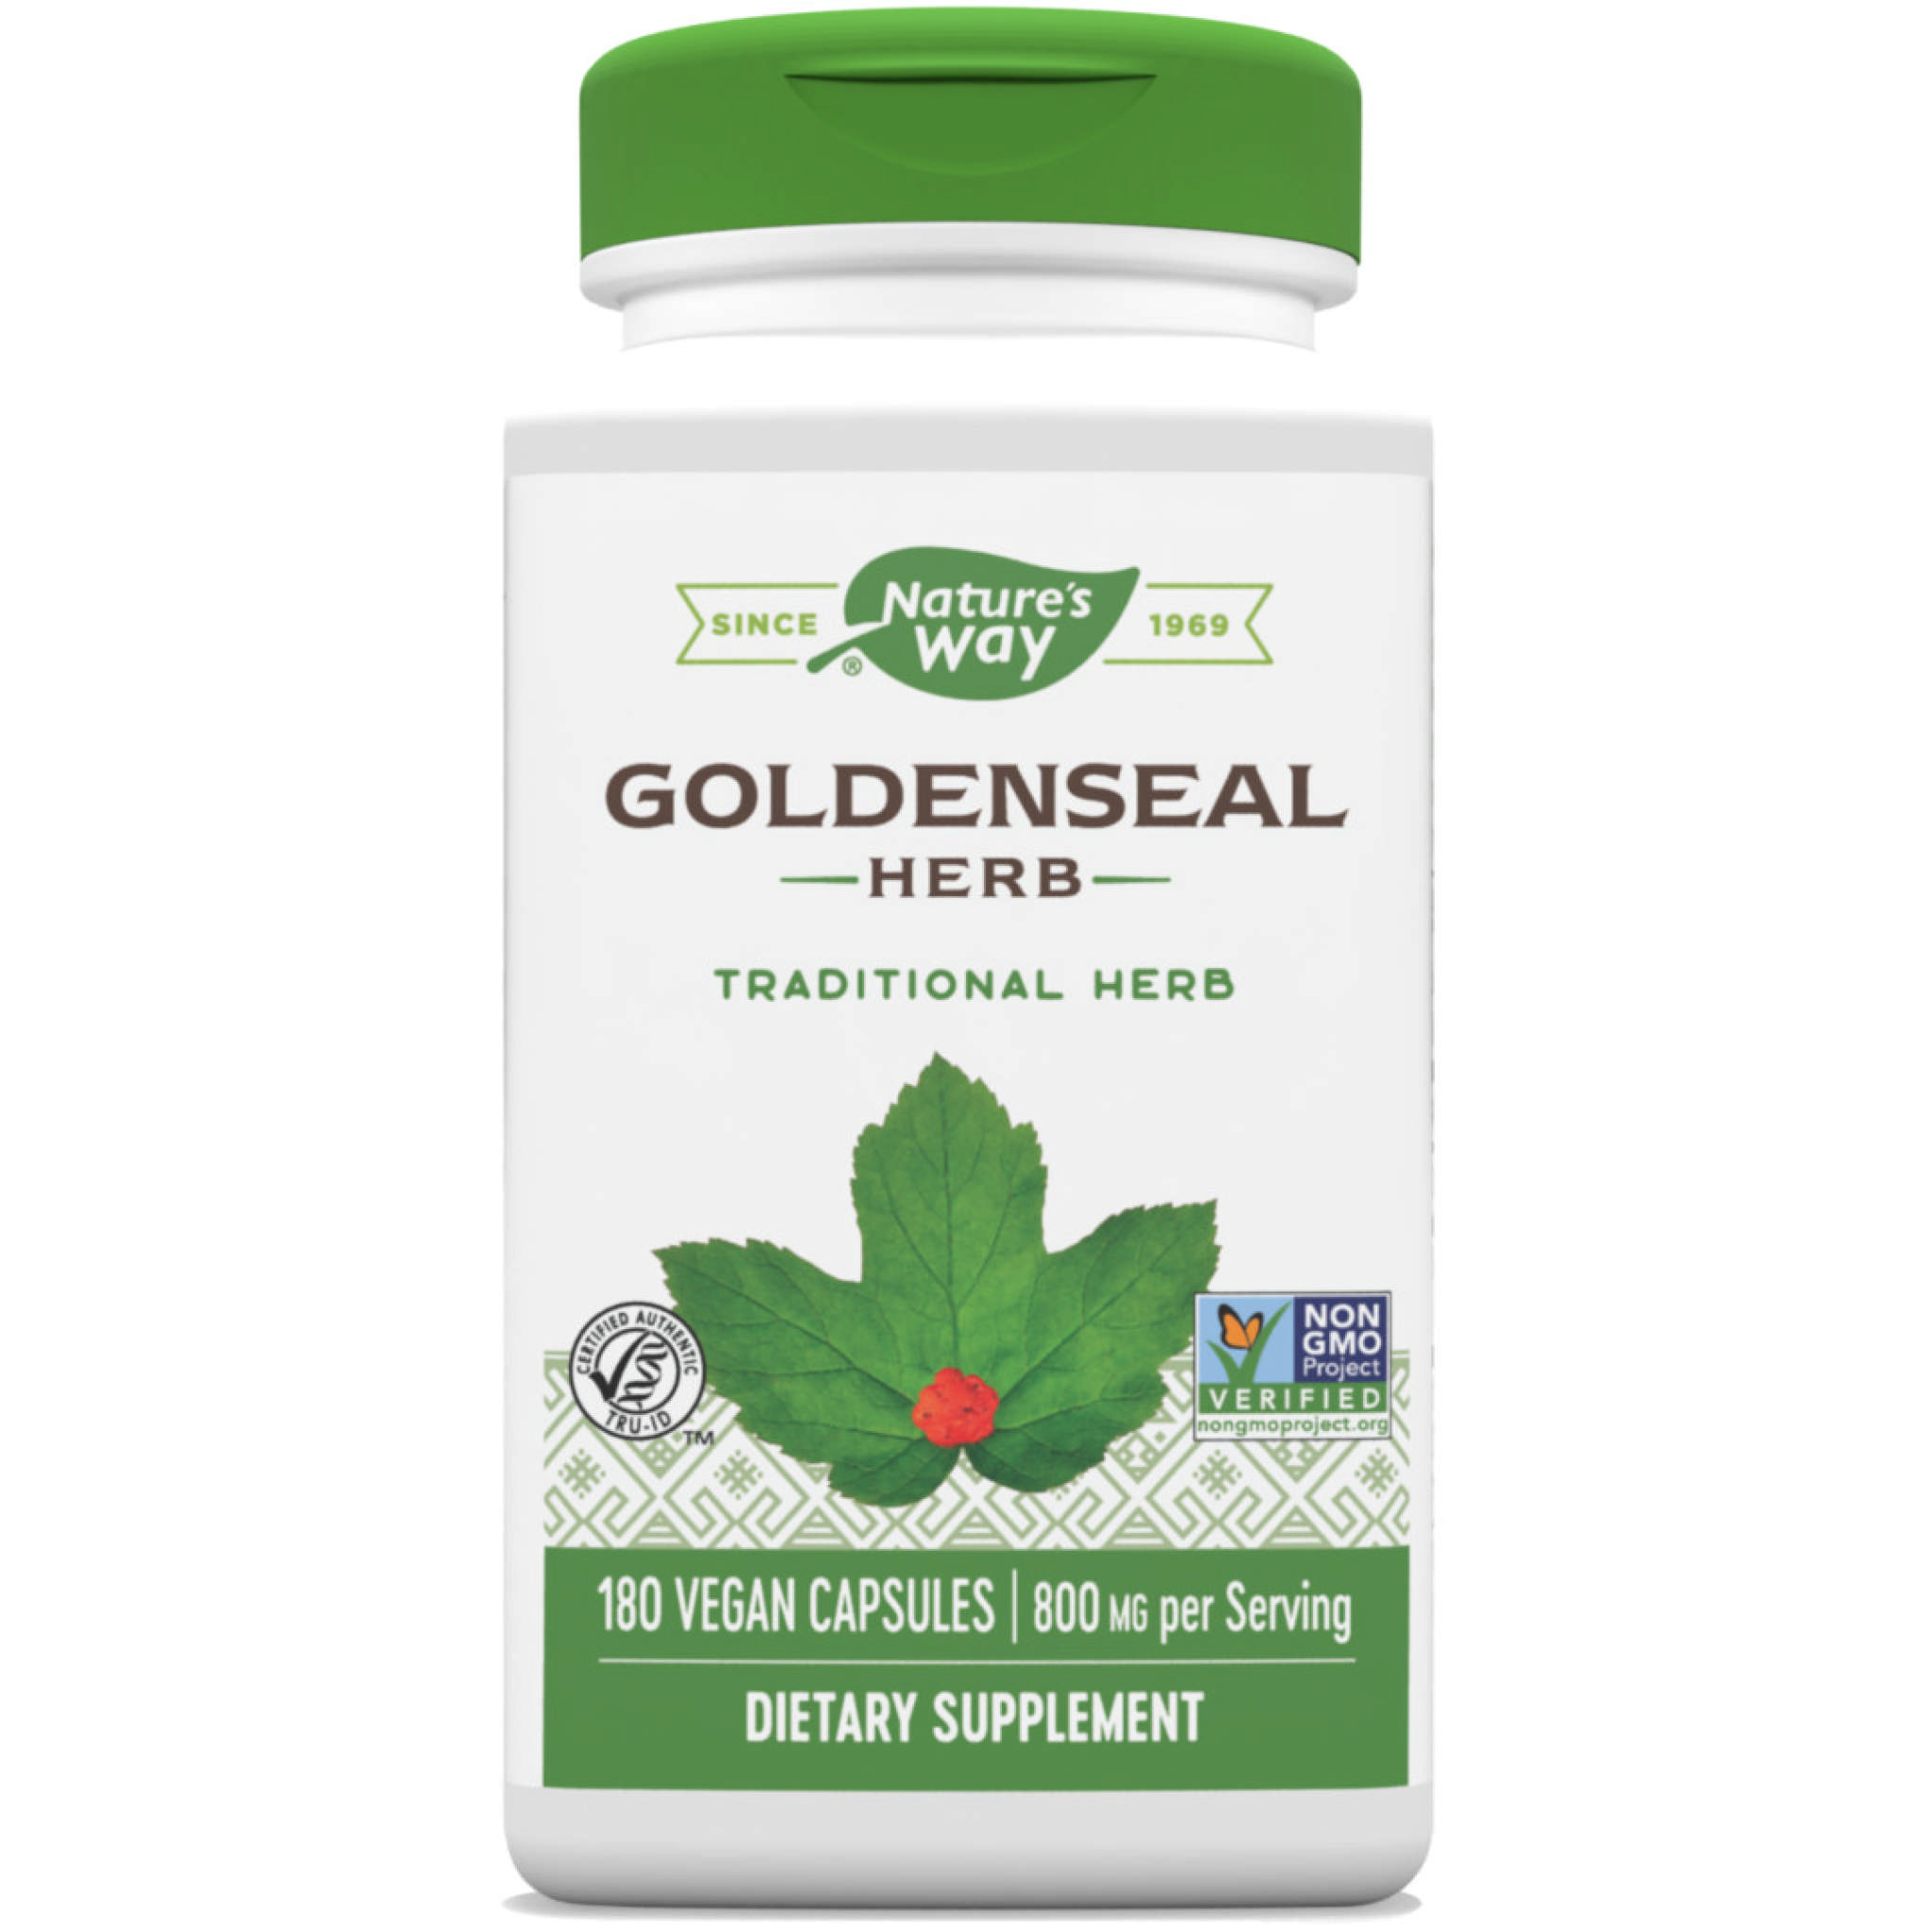 Natures Way - Goldenseal Herb